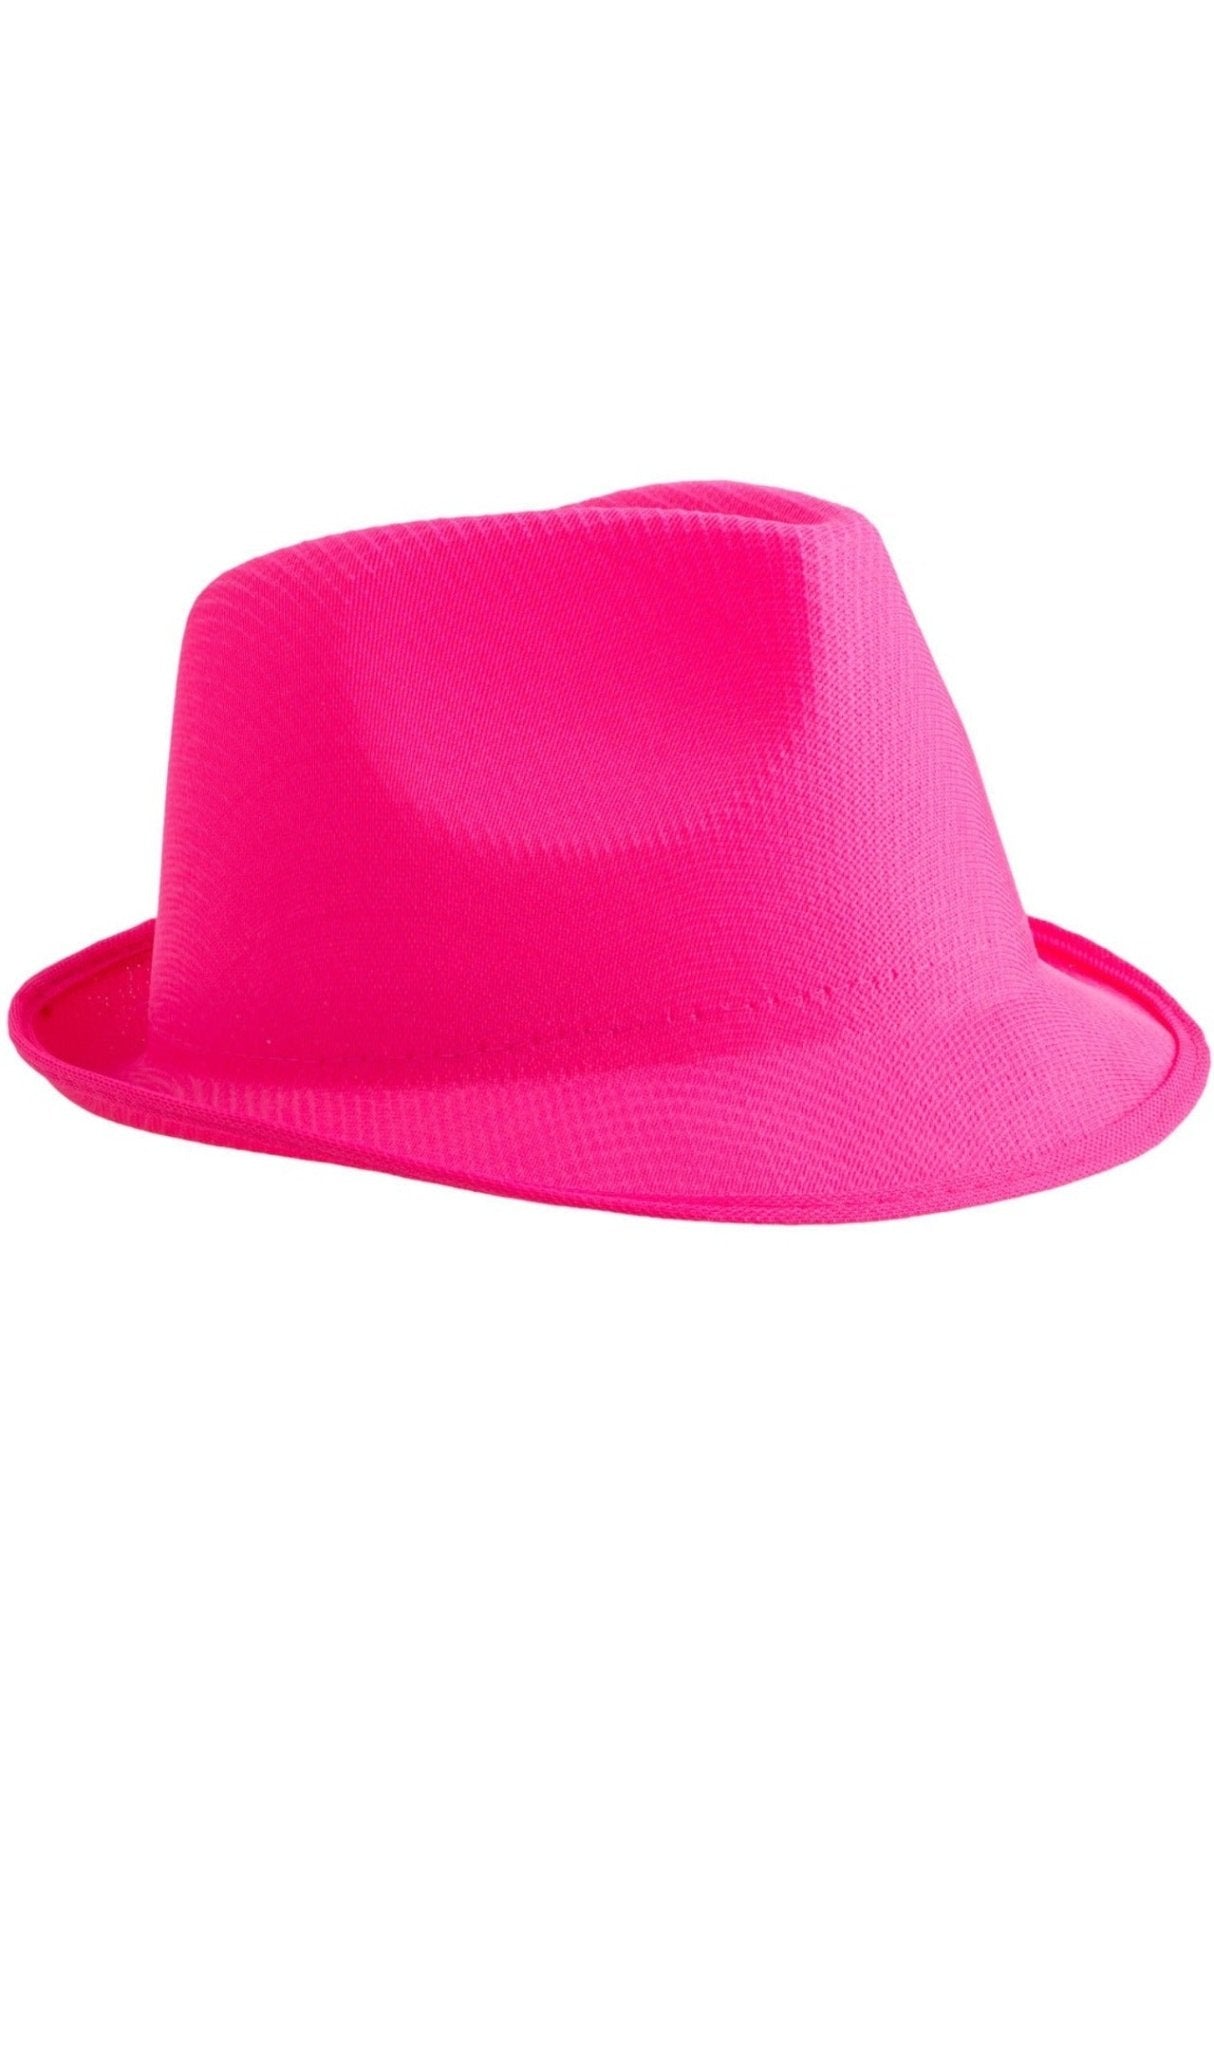 Chapeau fluo rose au meilleur prix